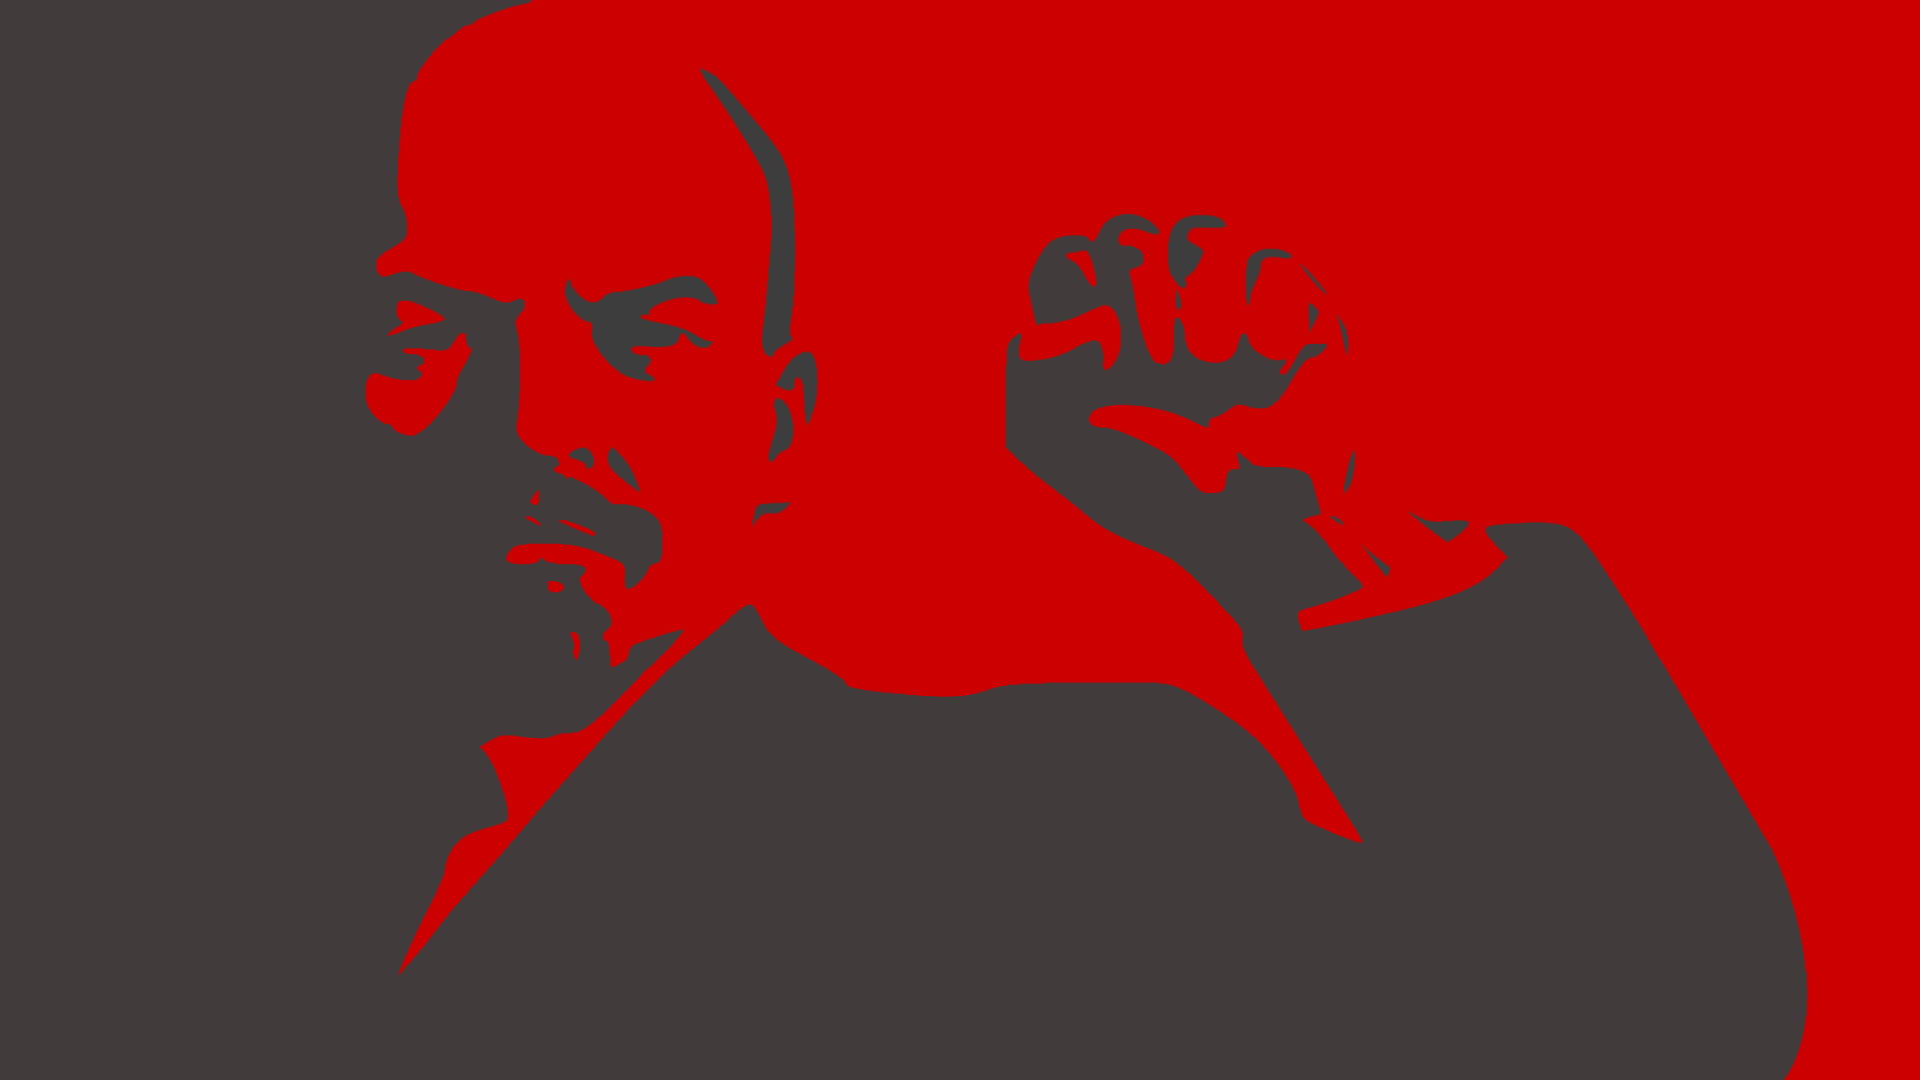 Vladimir Lenin, communism